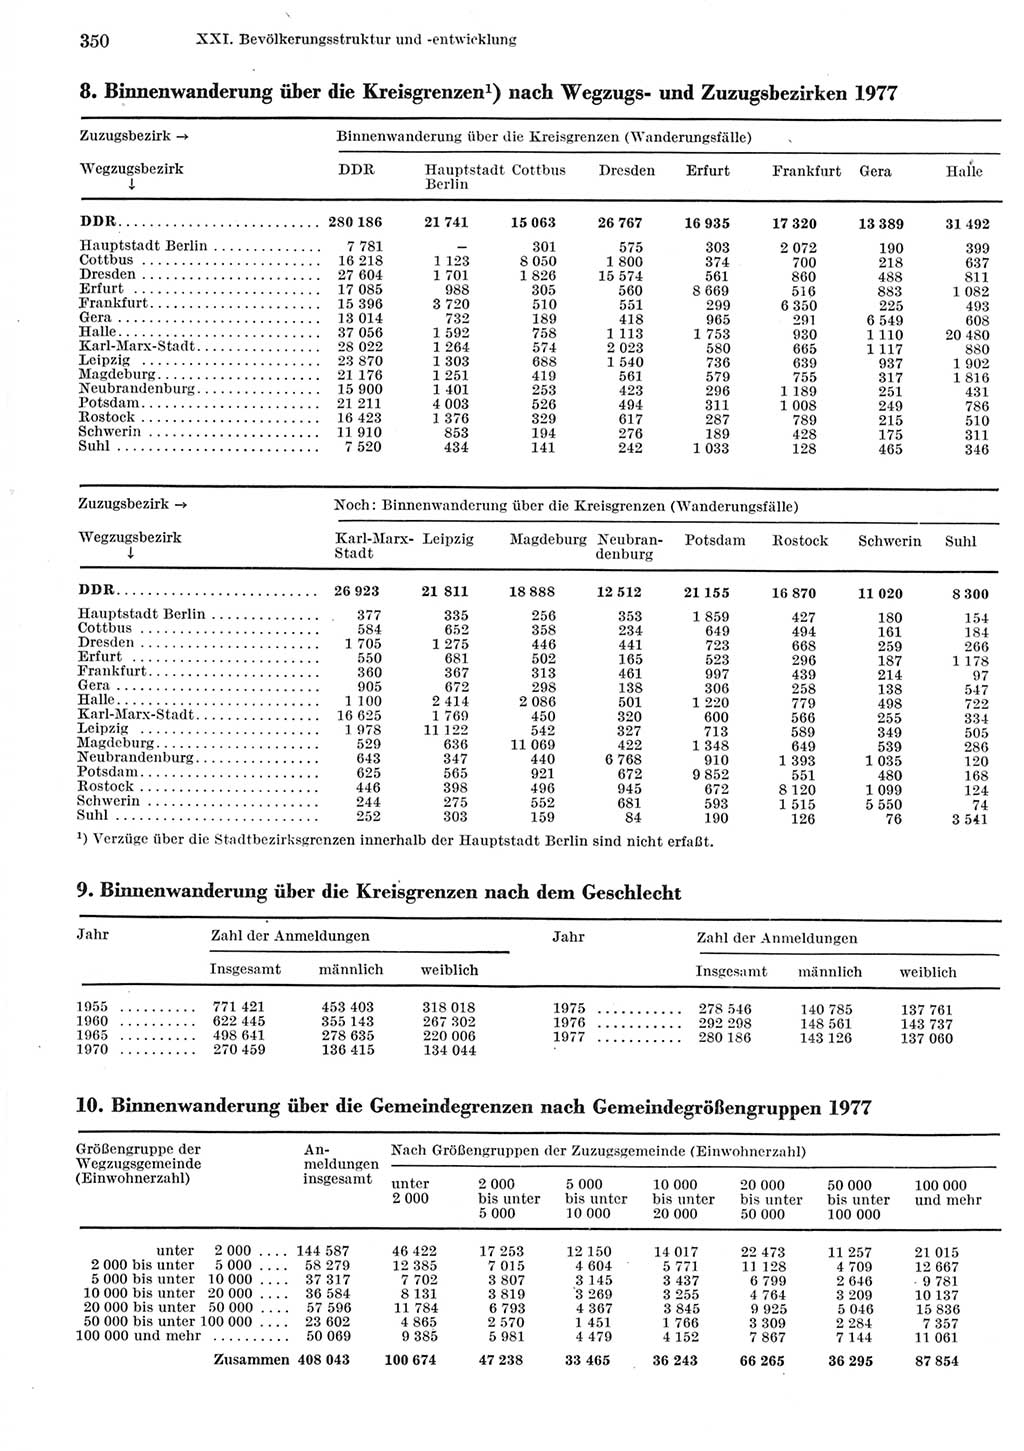 Statistisches Jahrbuch der Deutschen Demokratischen Republik (DDR) 1979, Seite 350 (Stat. Jb. DDR 1979, S. 350)